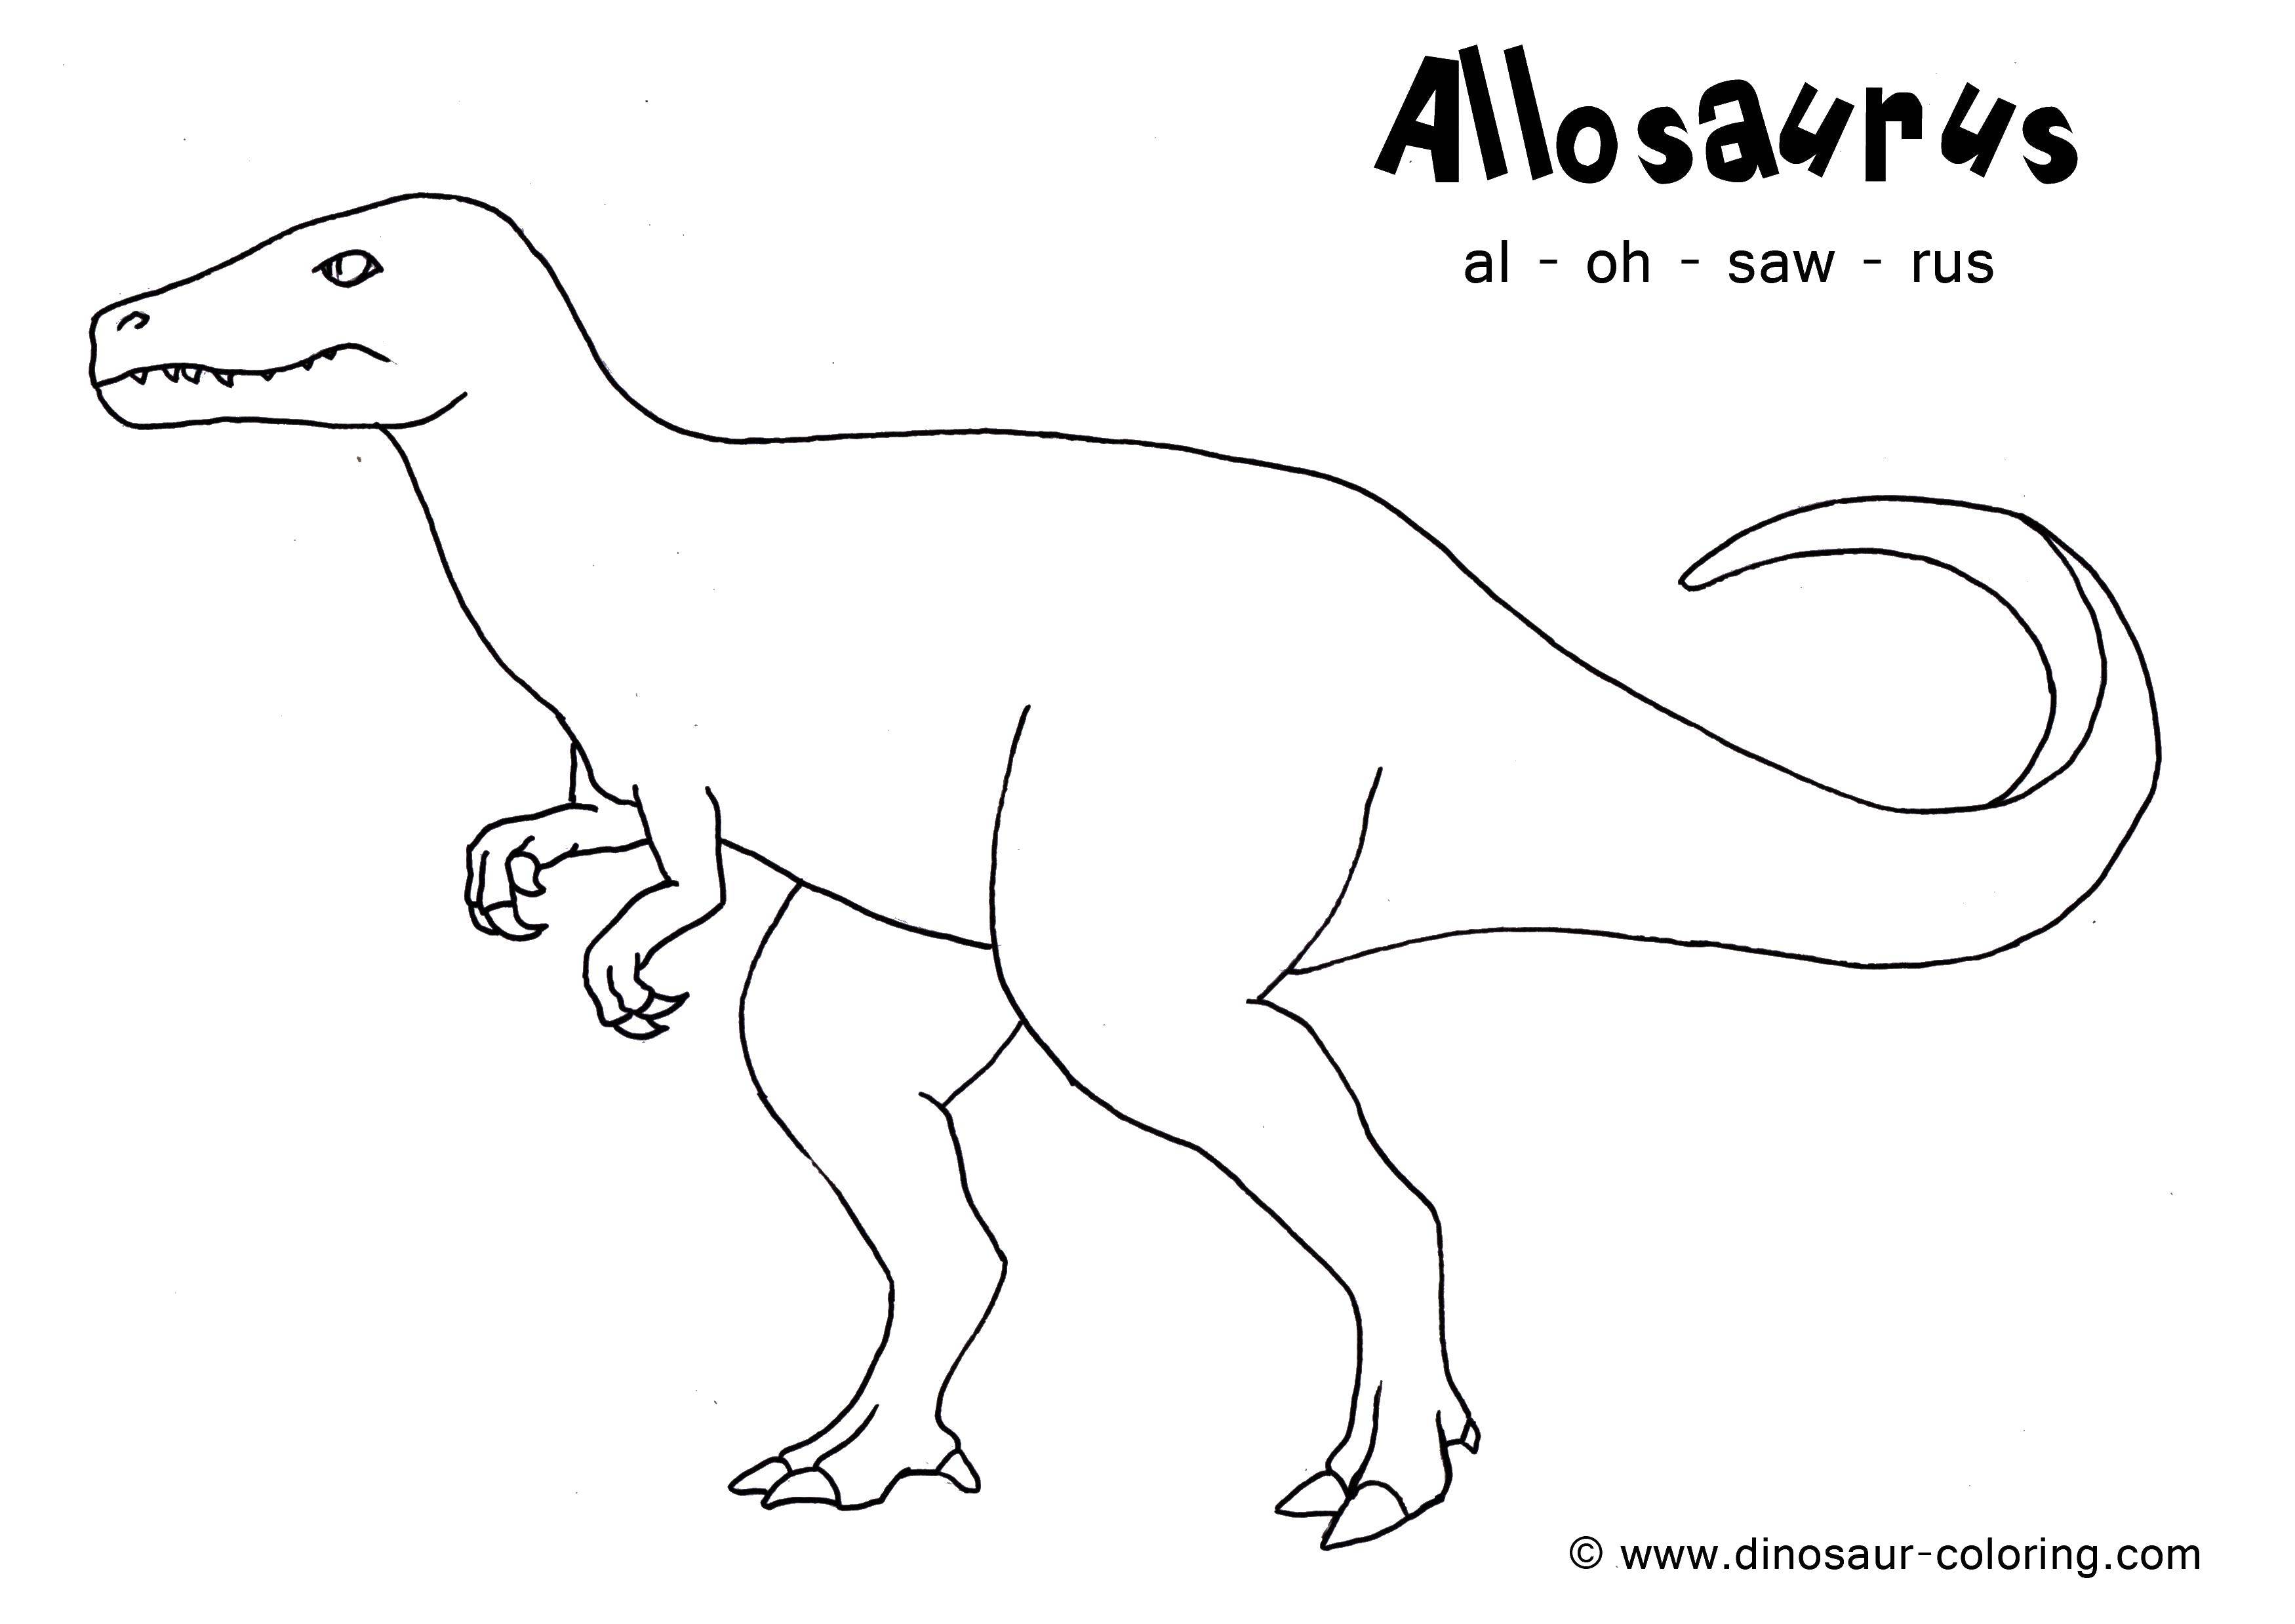 Coloring Allosaurus. Category dinosaur. Tags:  dinosaur, fangs, tail.